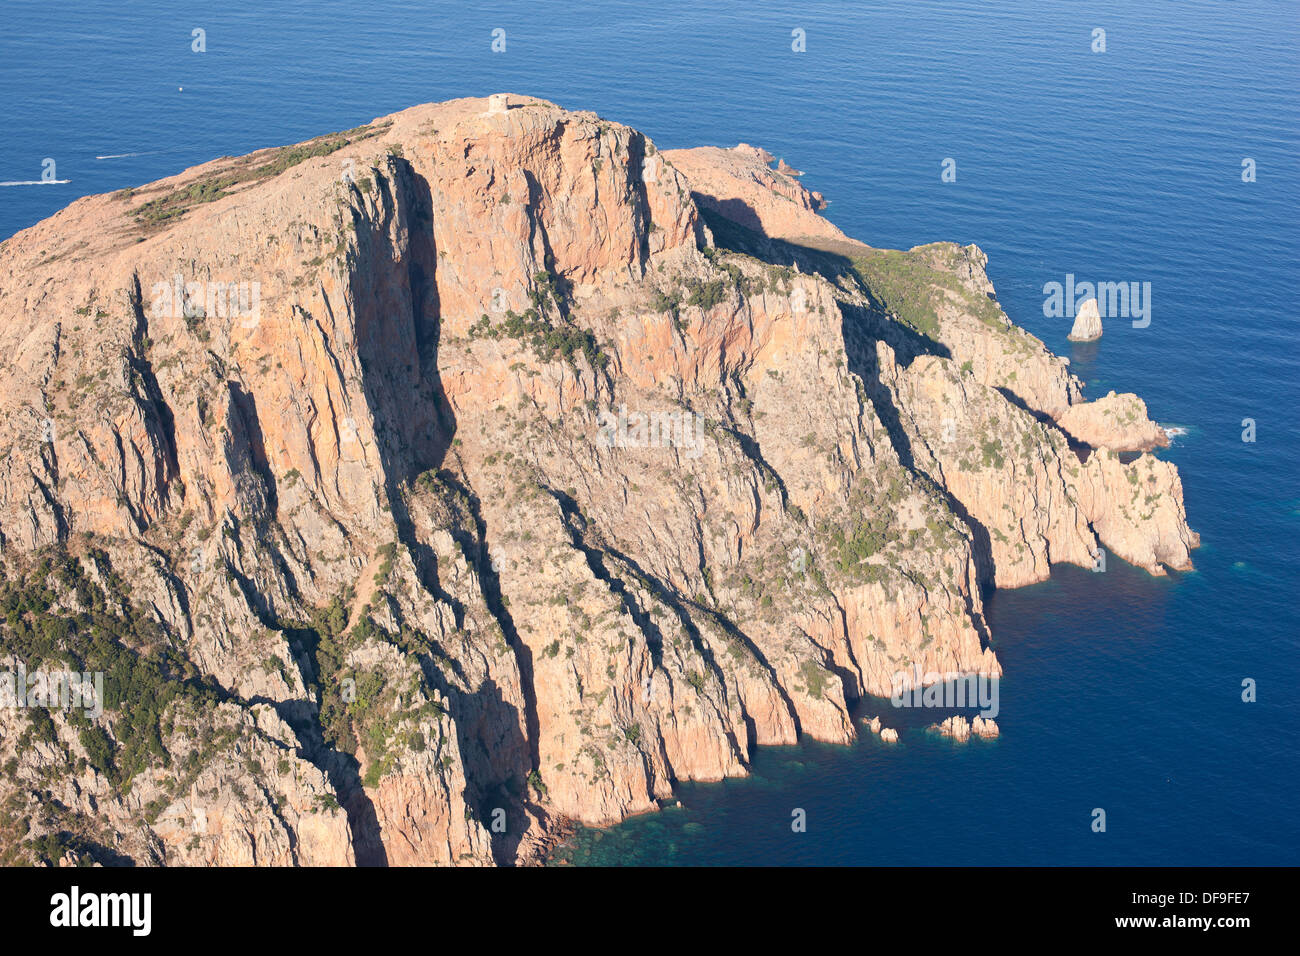 VISTA AEREA. Promontorio roccioso coronato da una torre genovese, alta 331 metri sopra il Mar Mediterraneo. Capo Rosso, noto anche come Capu Rossu, Corsica, Francia. Foto Stock